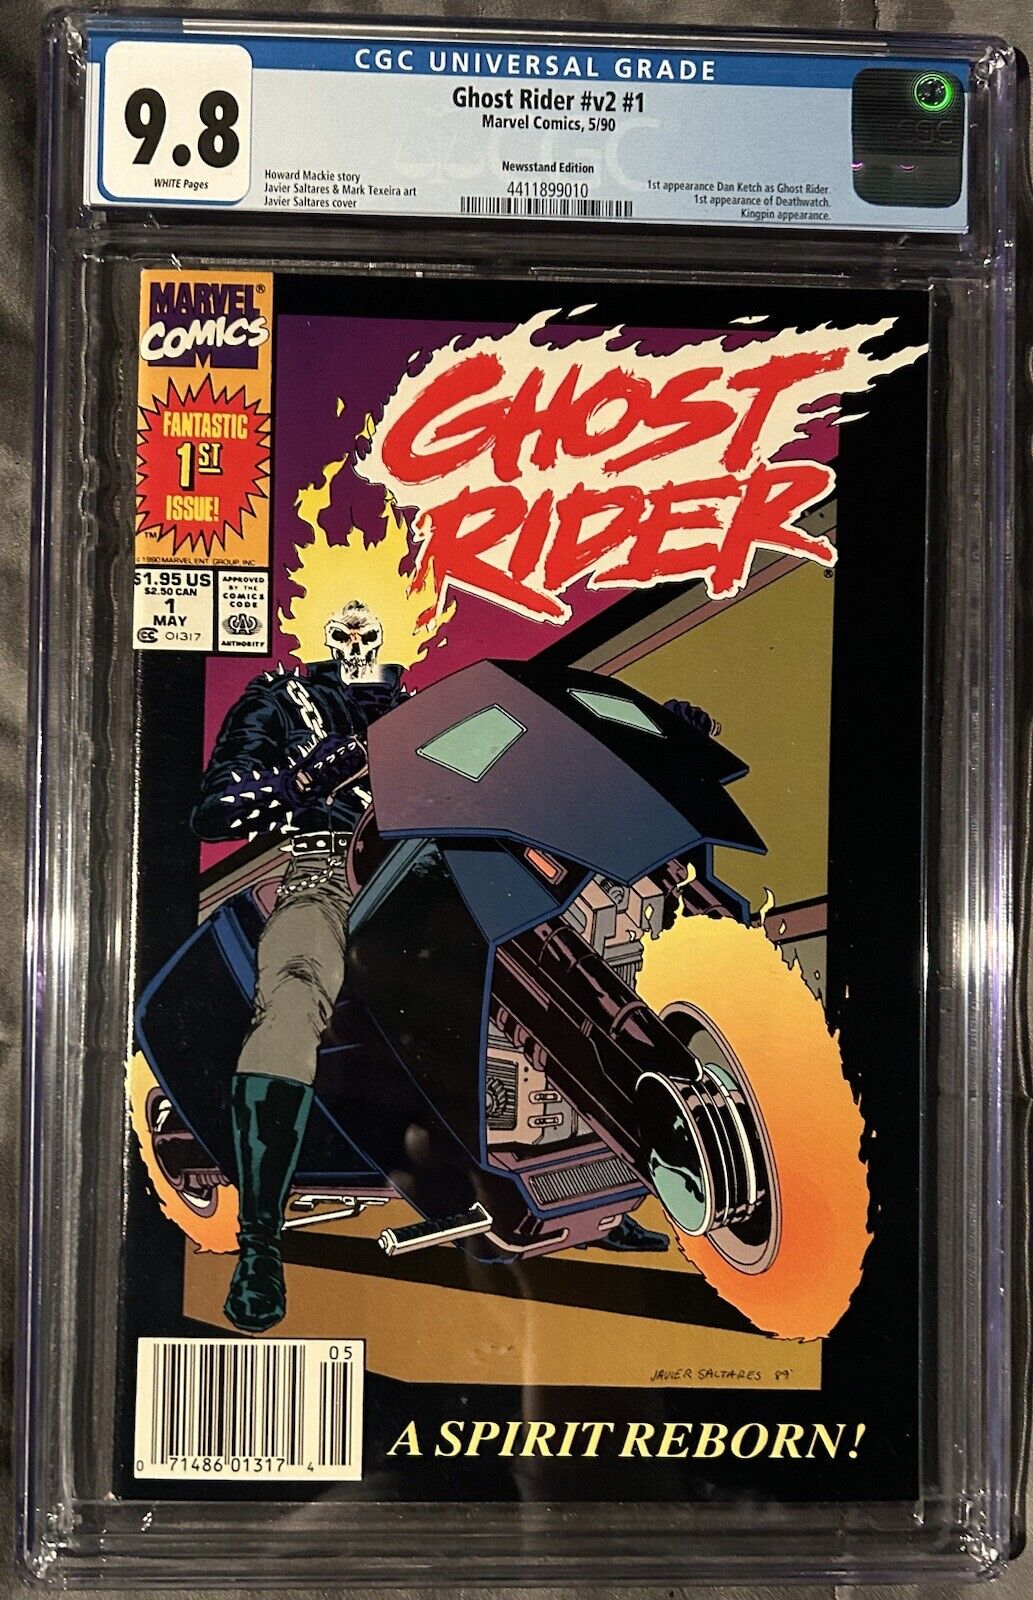 Ghost Rider #v2 #1 CGC 9.8 1990 Newsstand Edition A Spirit Reborn